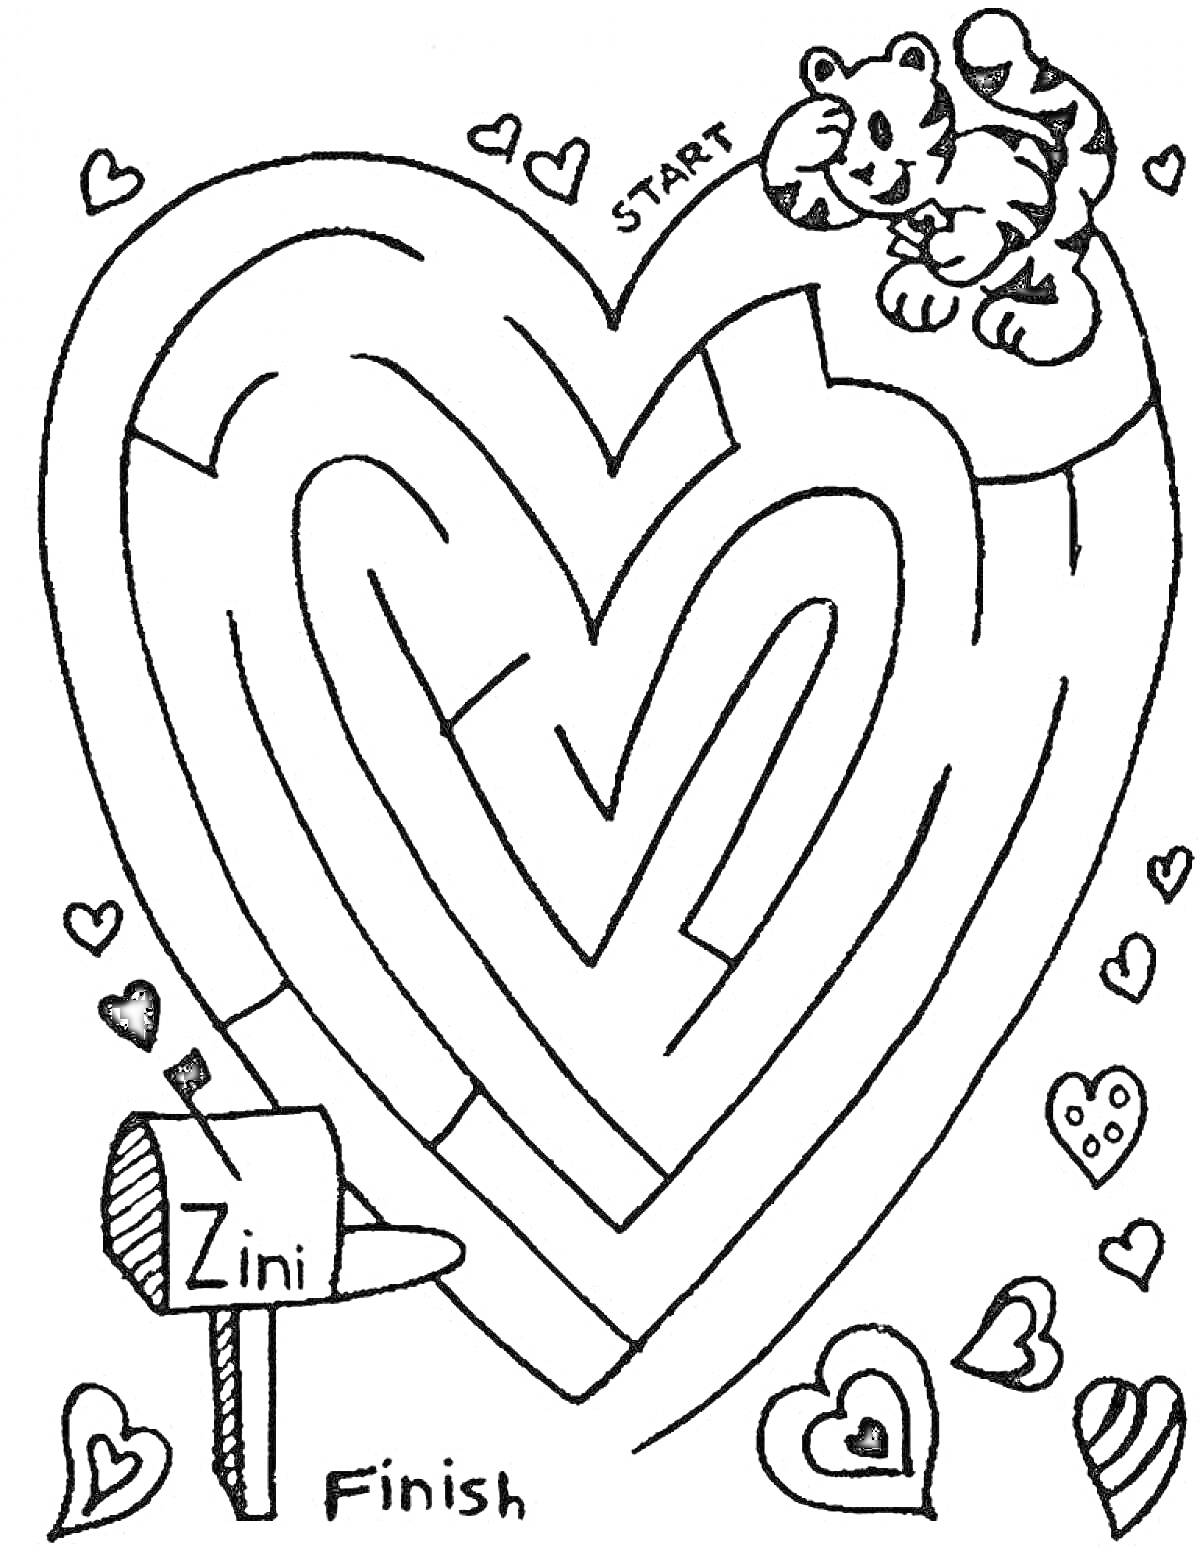 Лабиринт в форме сердца с тигренком, почтовым ящиком и сердечками